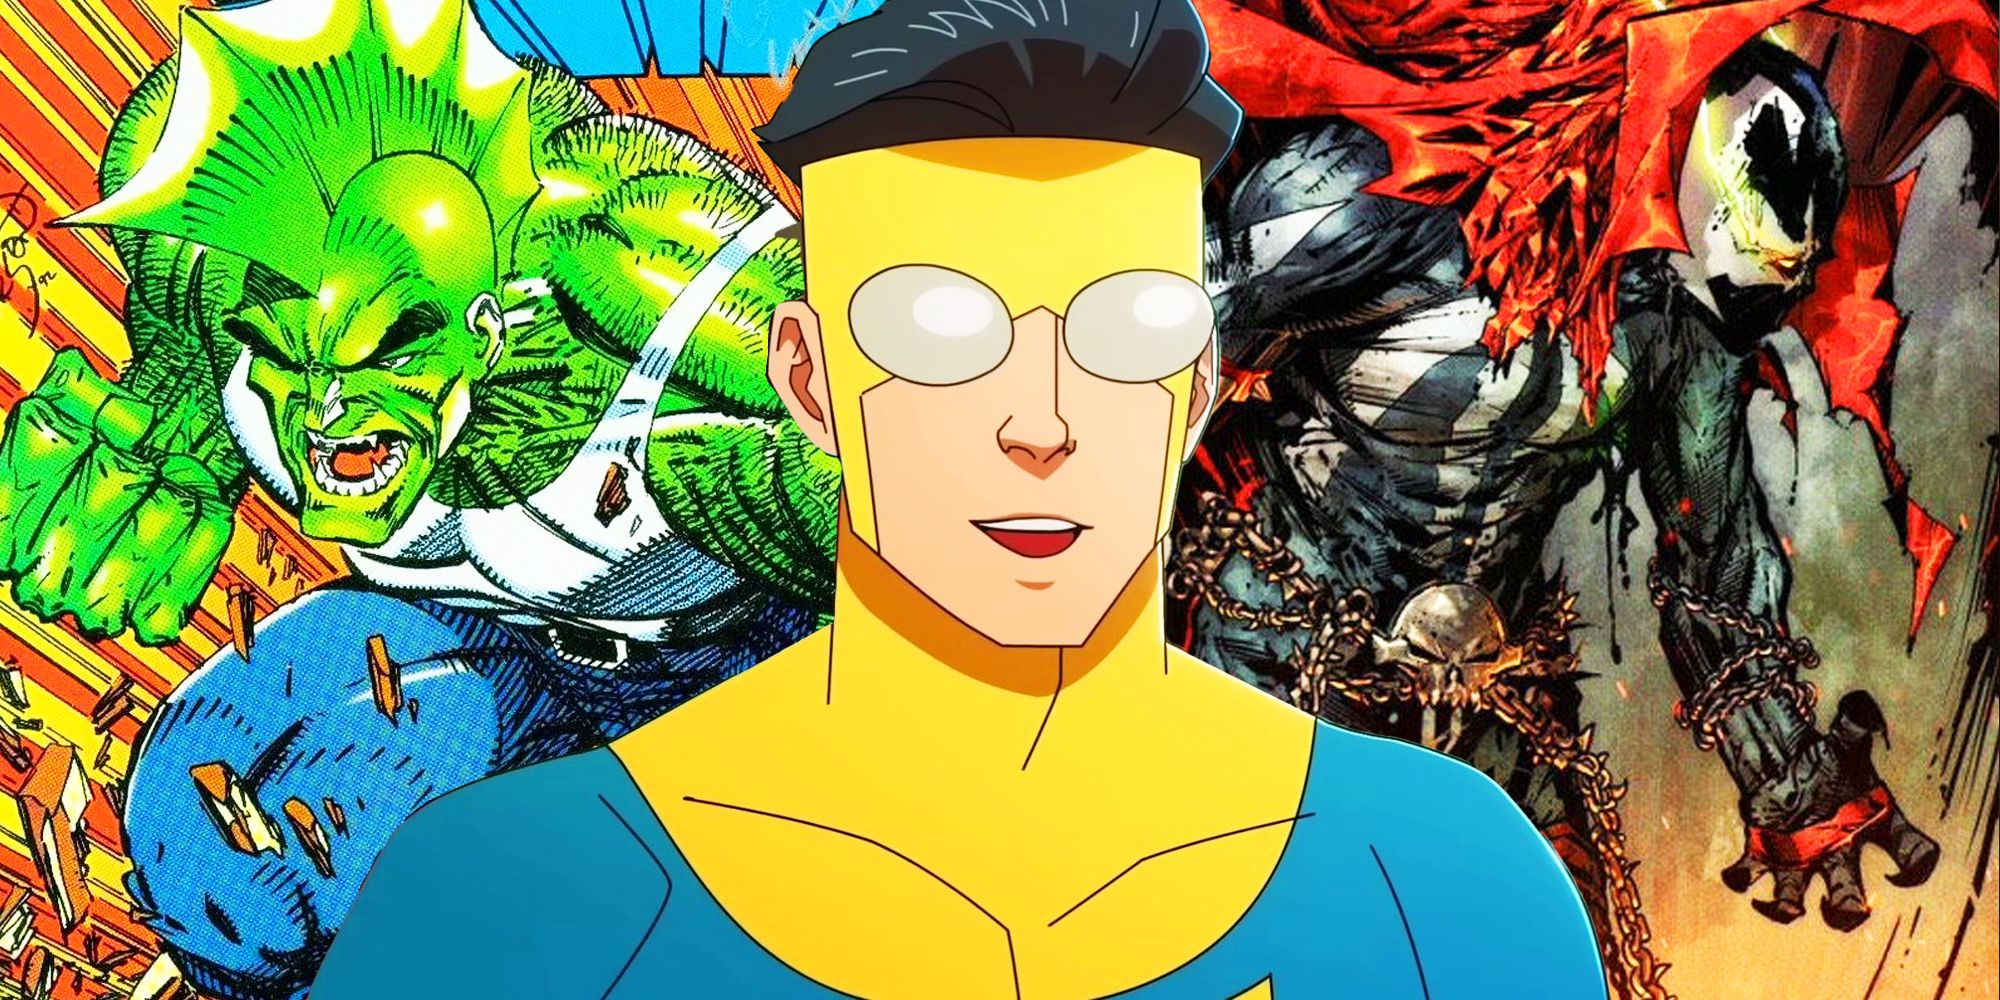 Invincible Creator defiende los cómics extremos de los 90 y cita al creador de Deadpool como su principal influencia